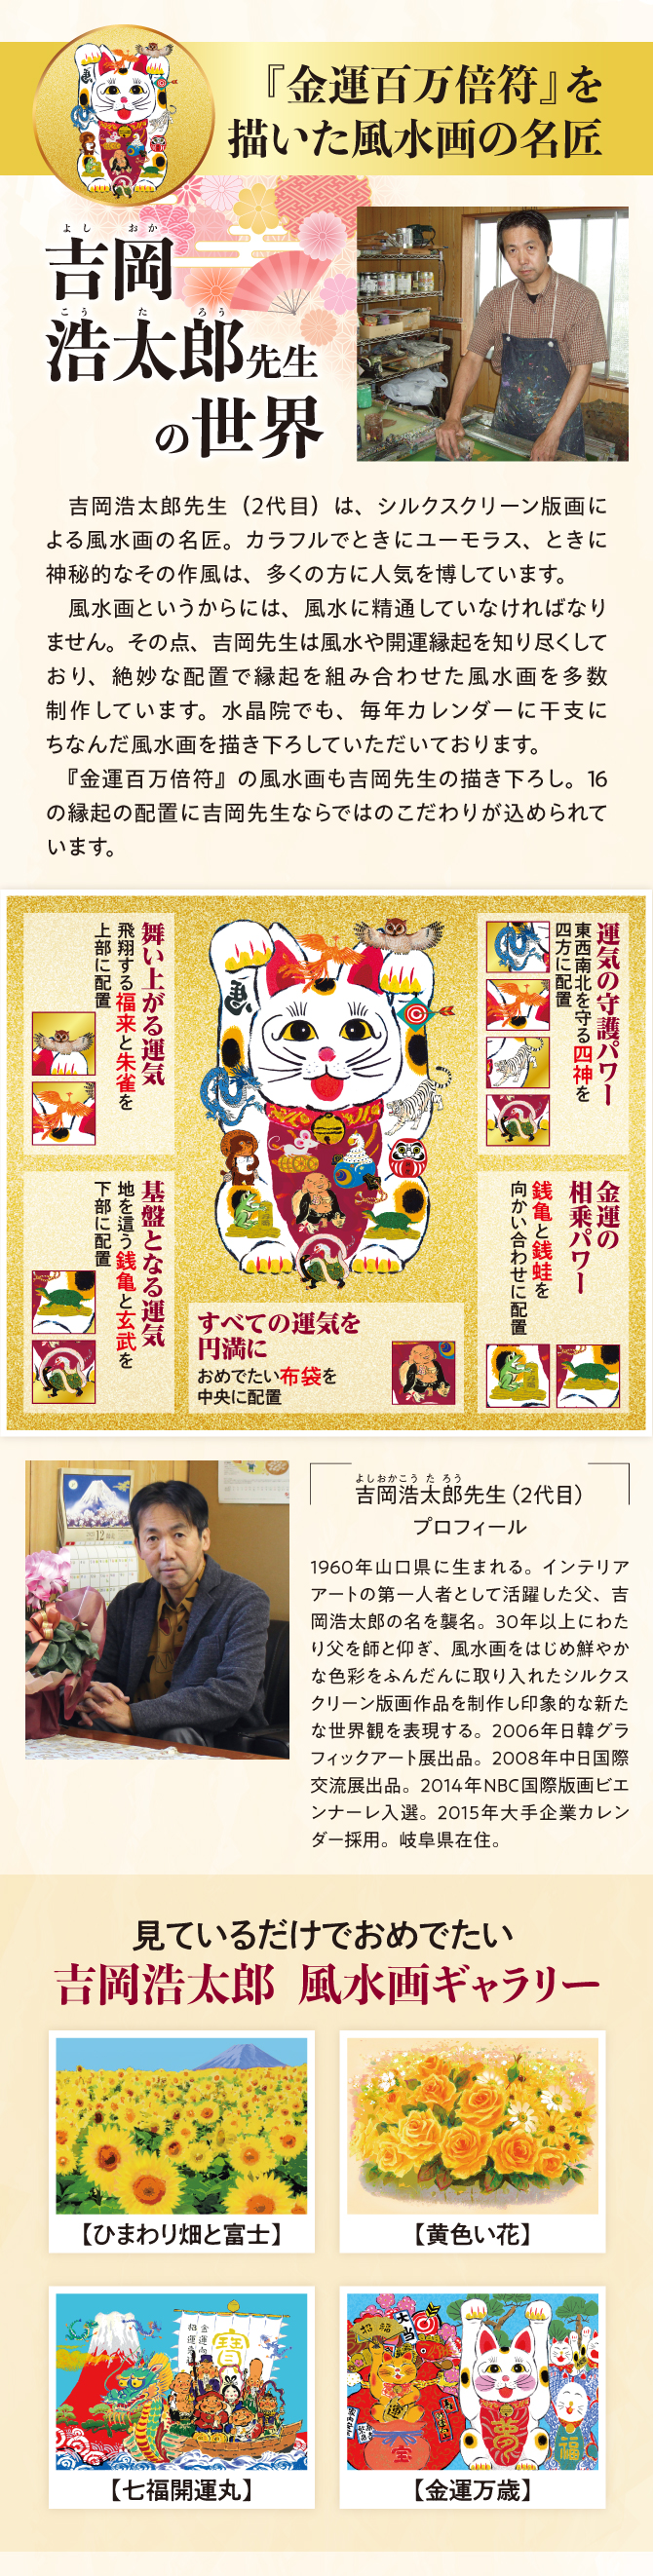 『金運百万倍符』の風水画は吉岡浩太郎先生の描き下ろし。16の縁起の配置にこだわりが込められています。